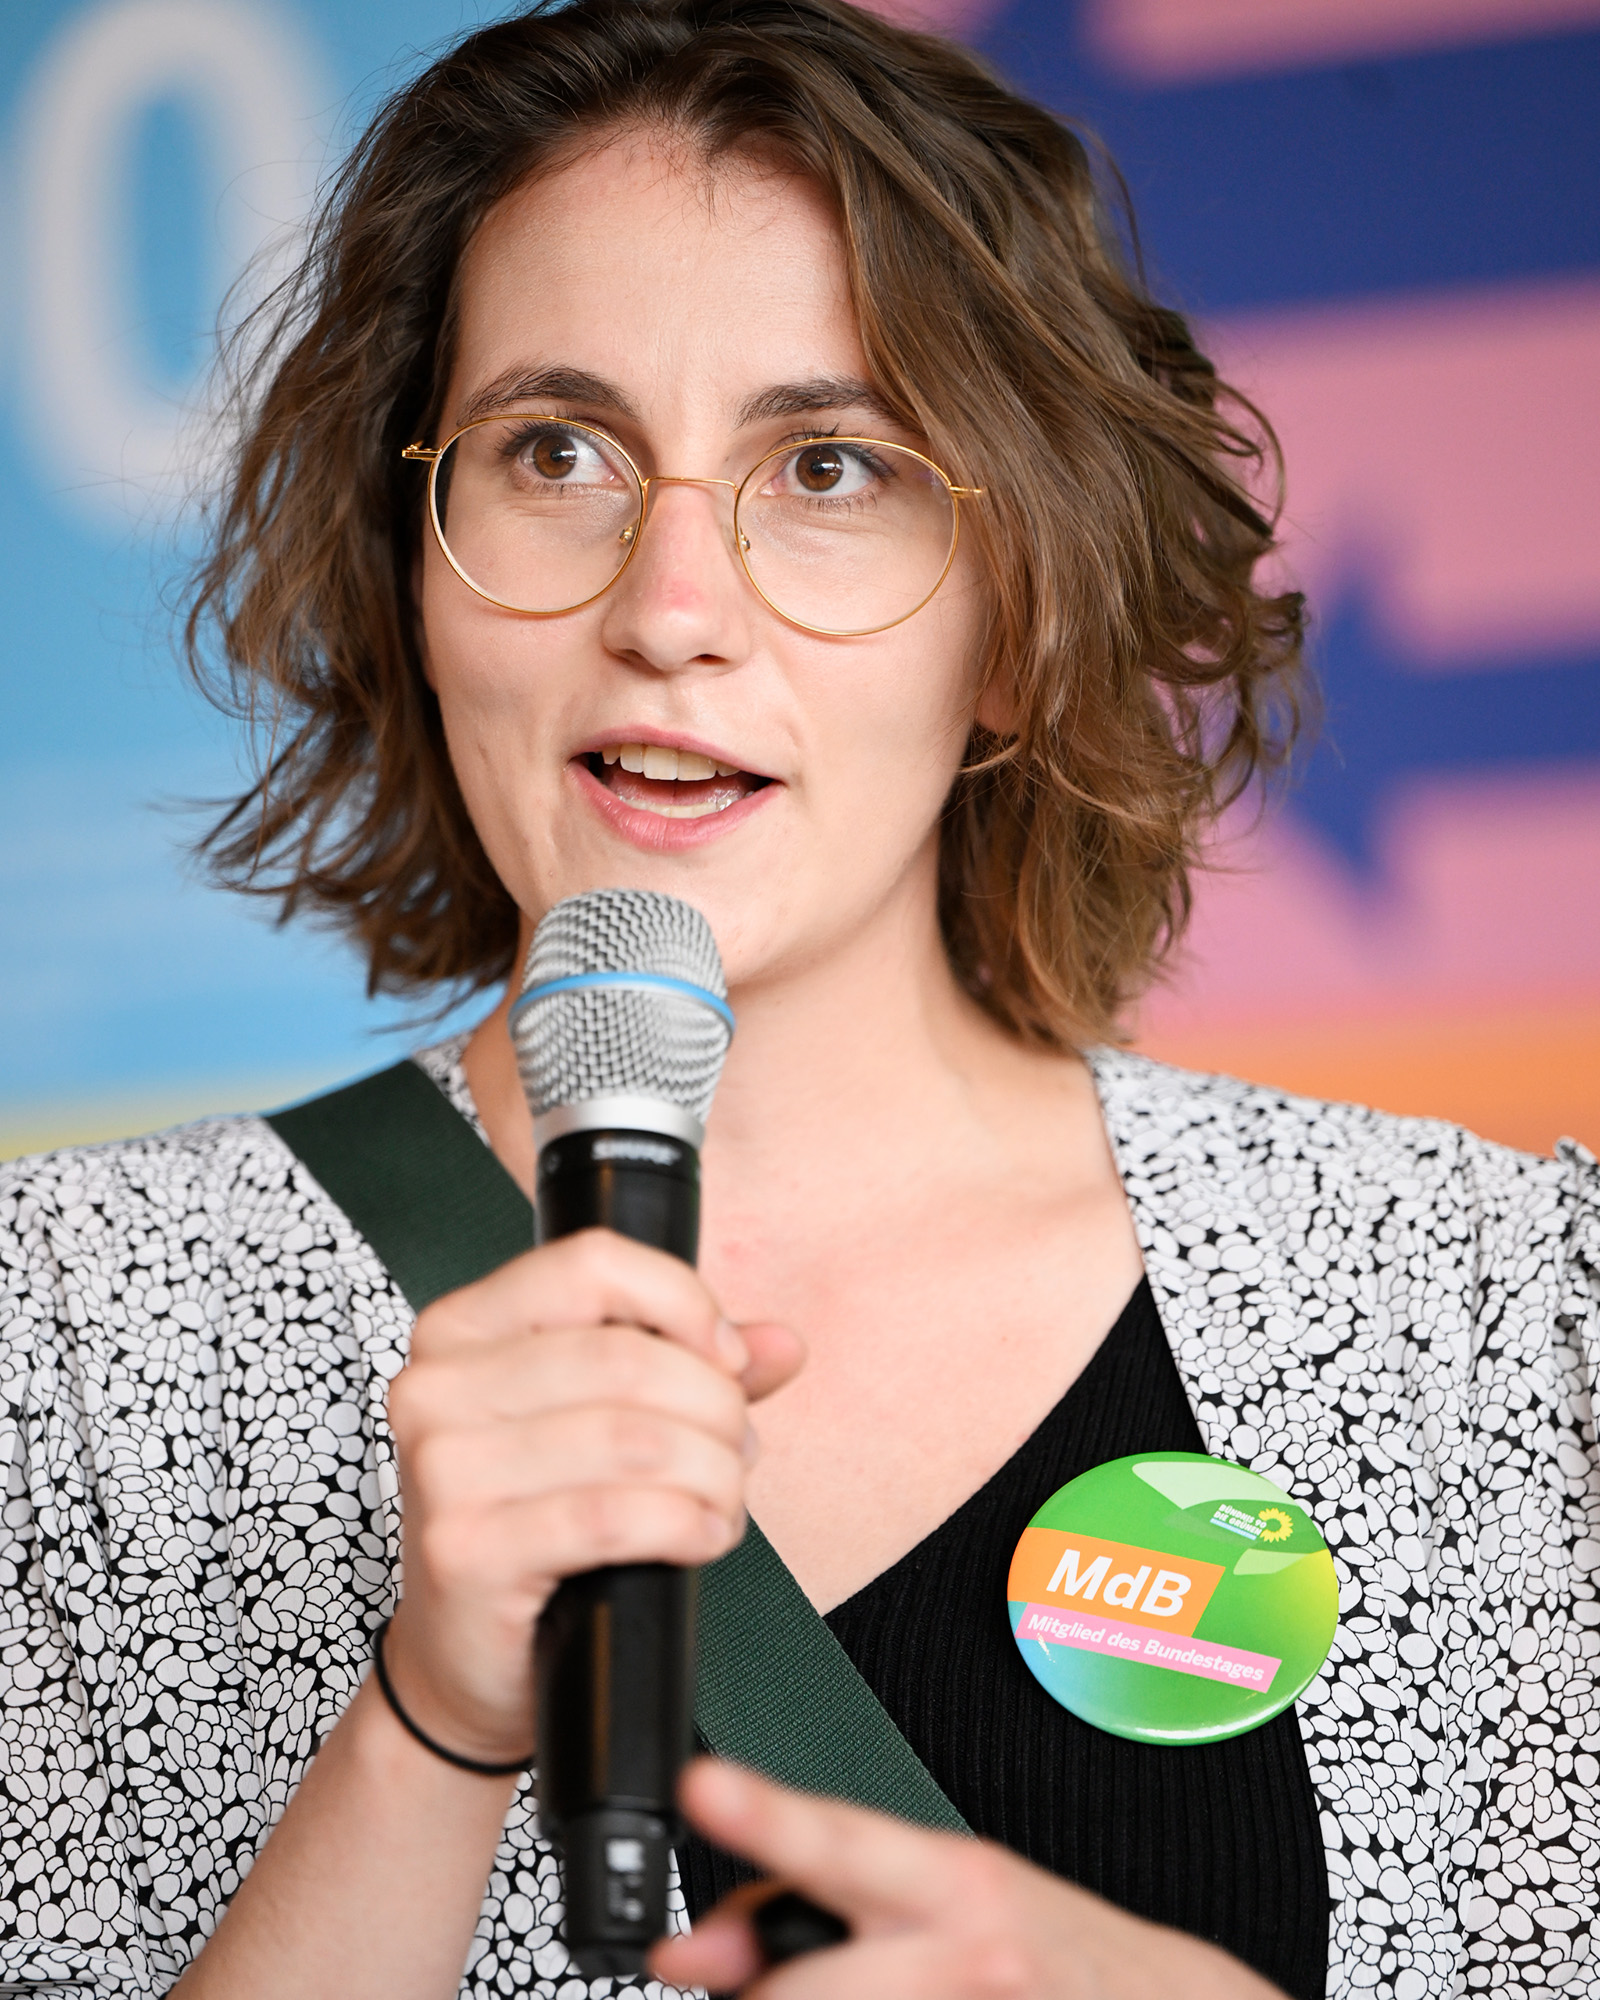 Eine junge Frau spricht in ein Mikrofon und trägt ein Button mit der Aufschrift: MdB Mitglied des Bundestages.